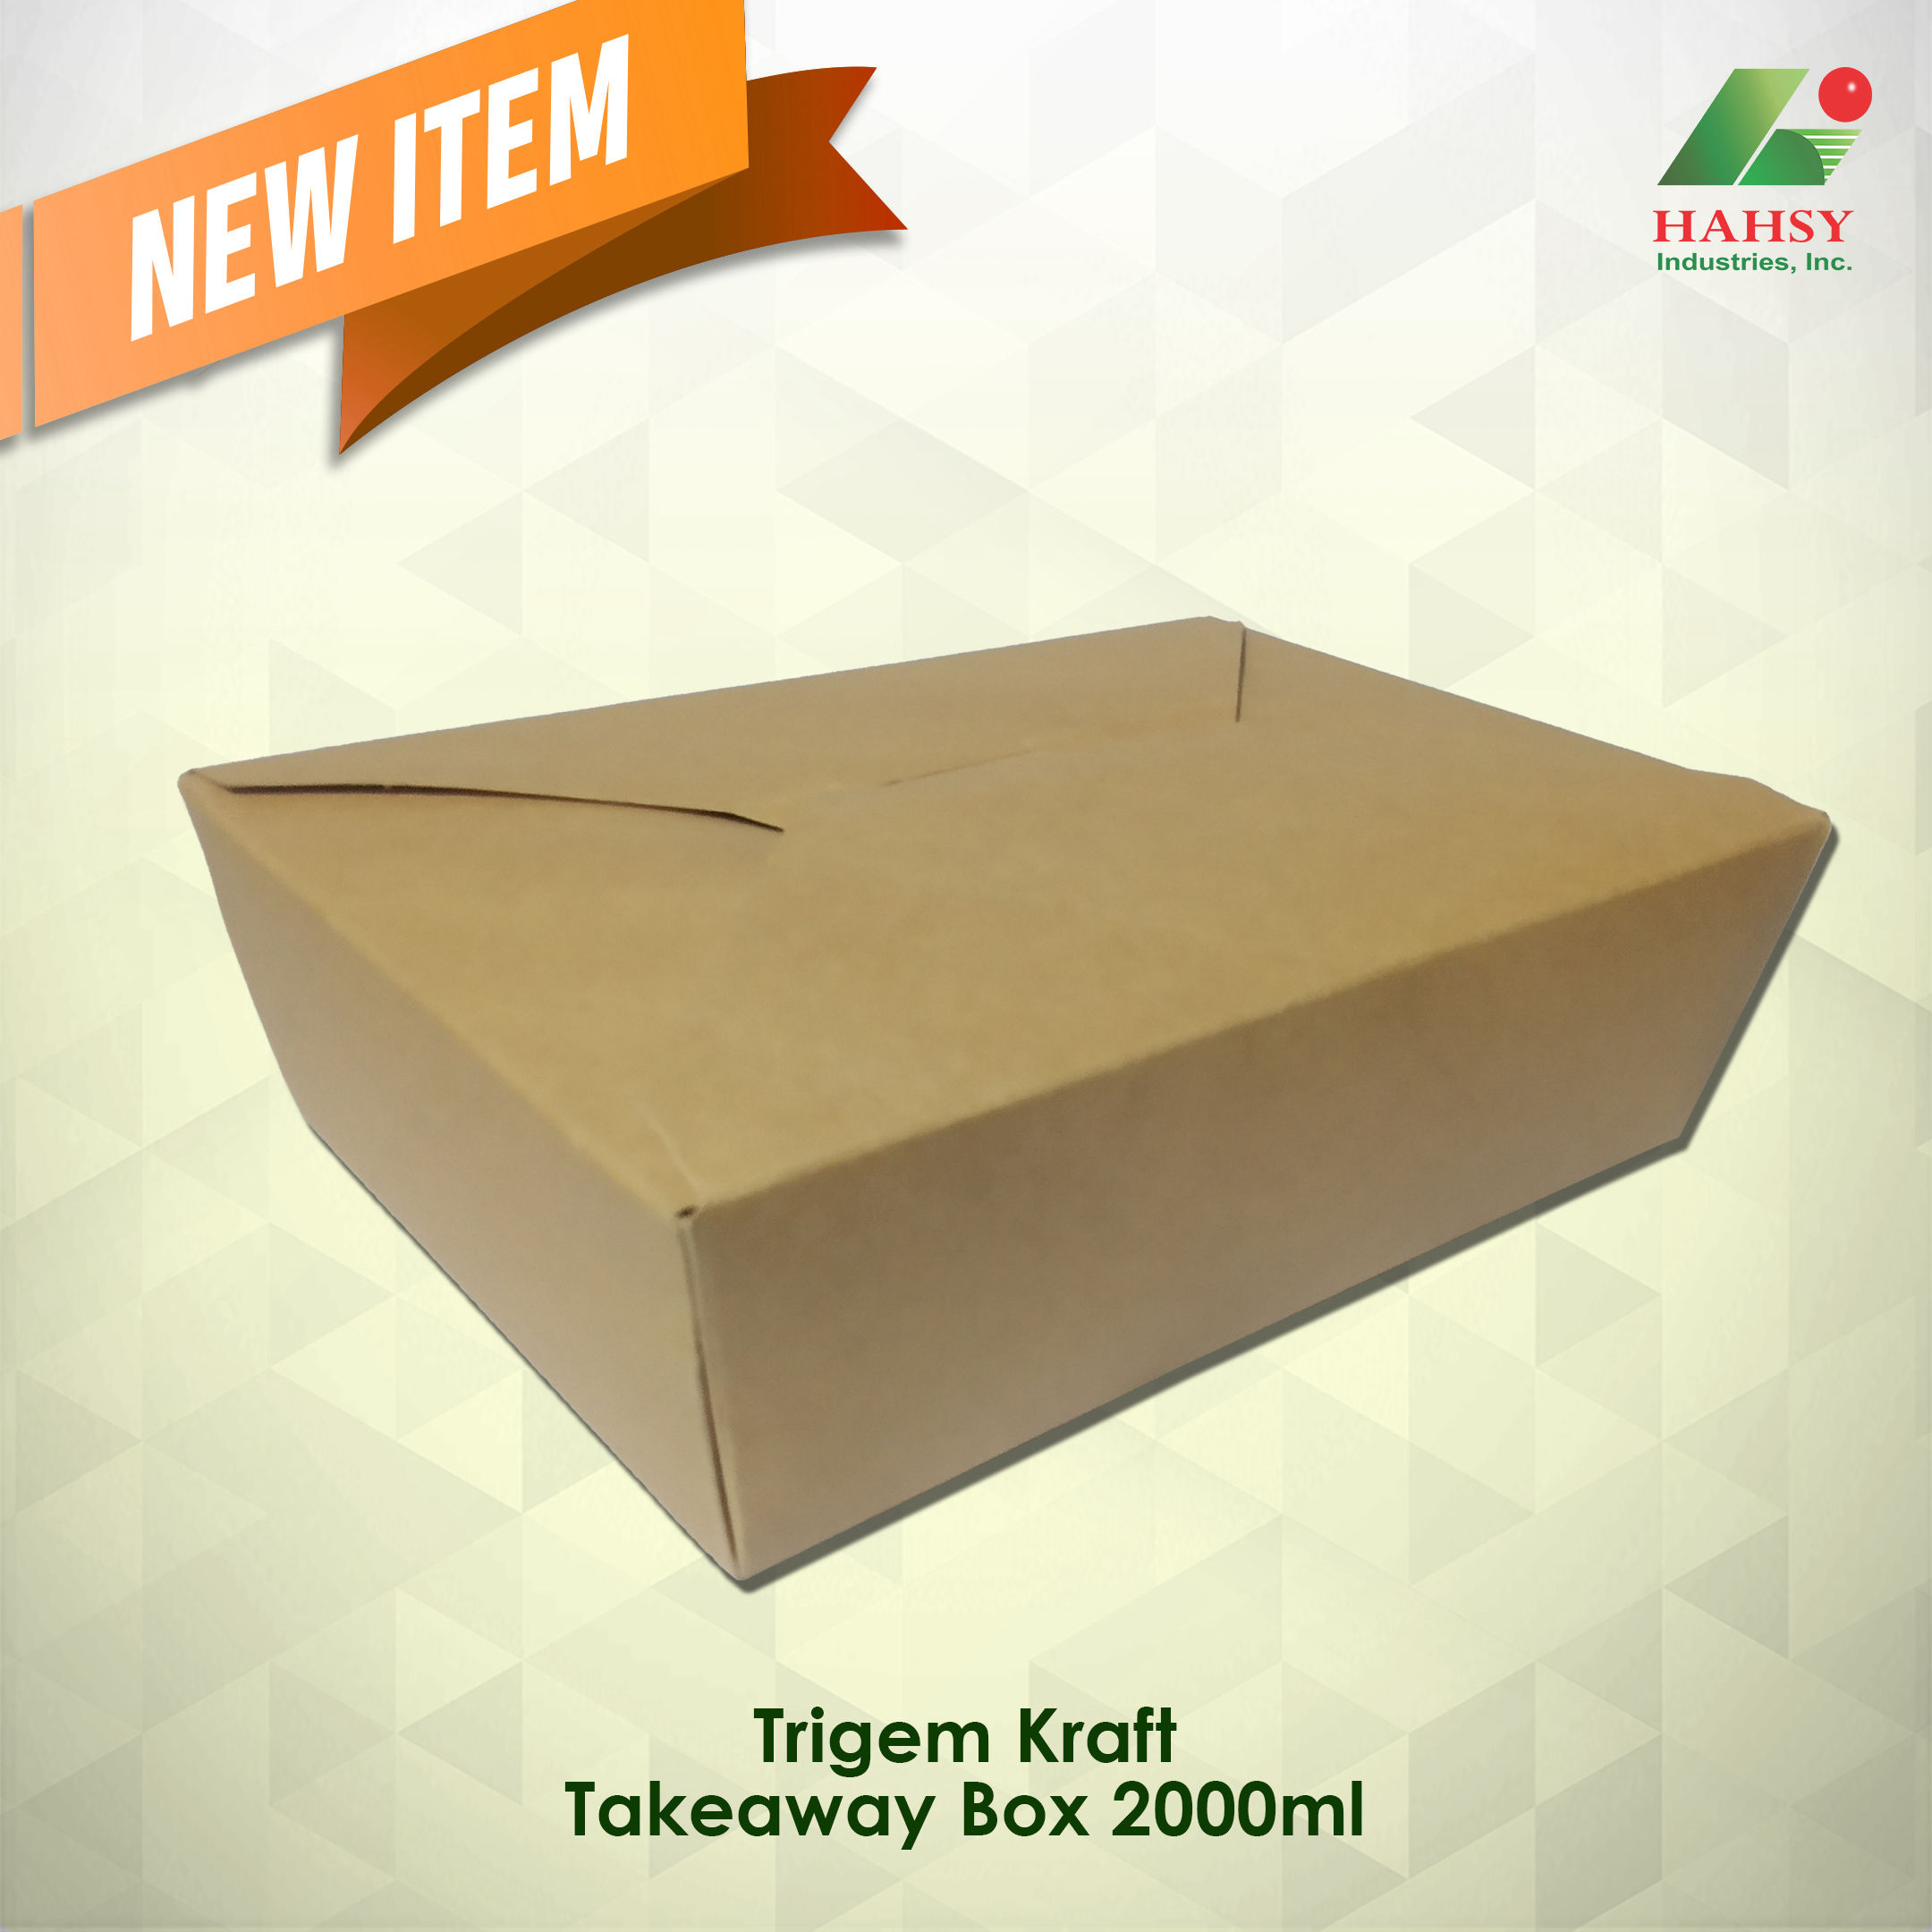 Trigem Kraft Takeaway Box 2000ml